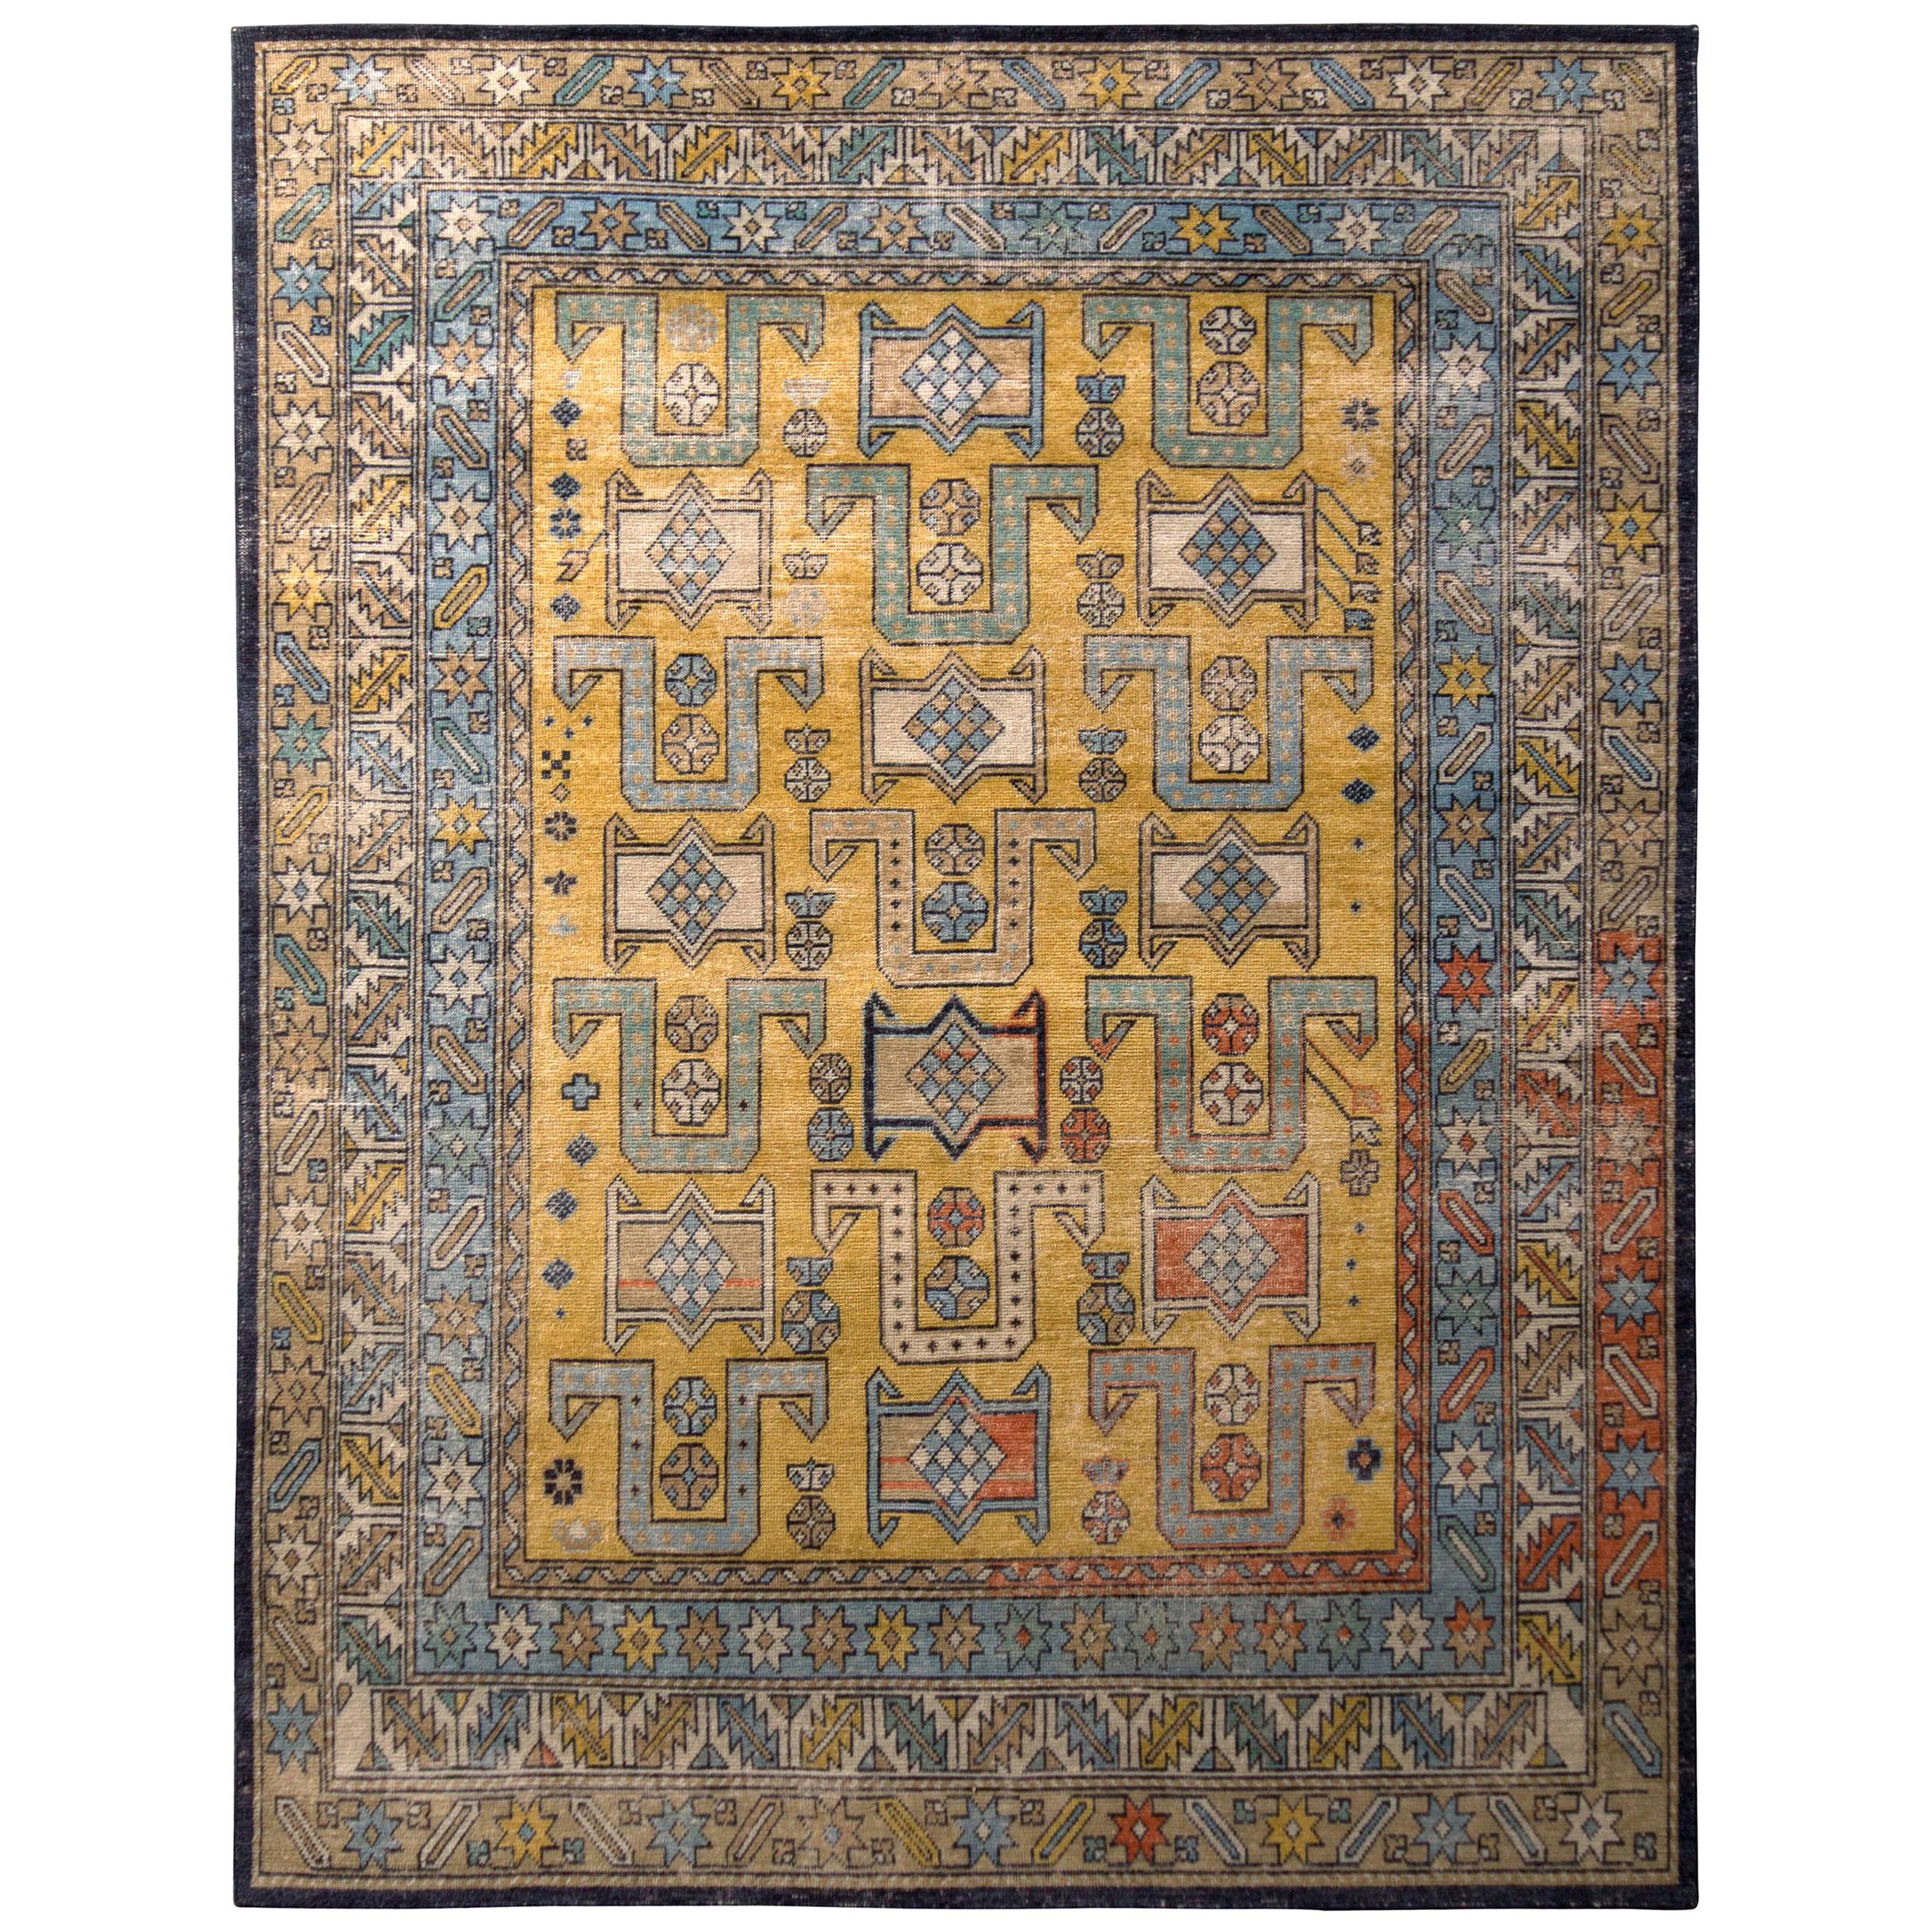 Handgeknüpfter klassischer Teppich & Kelim-Teppich in Gold und Blau mit geometrischem Muster